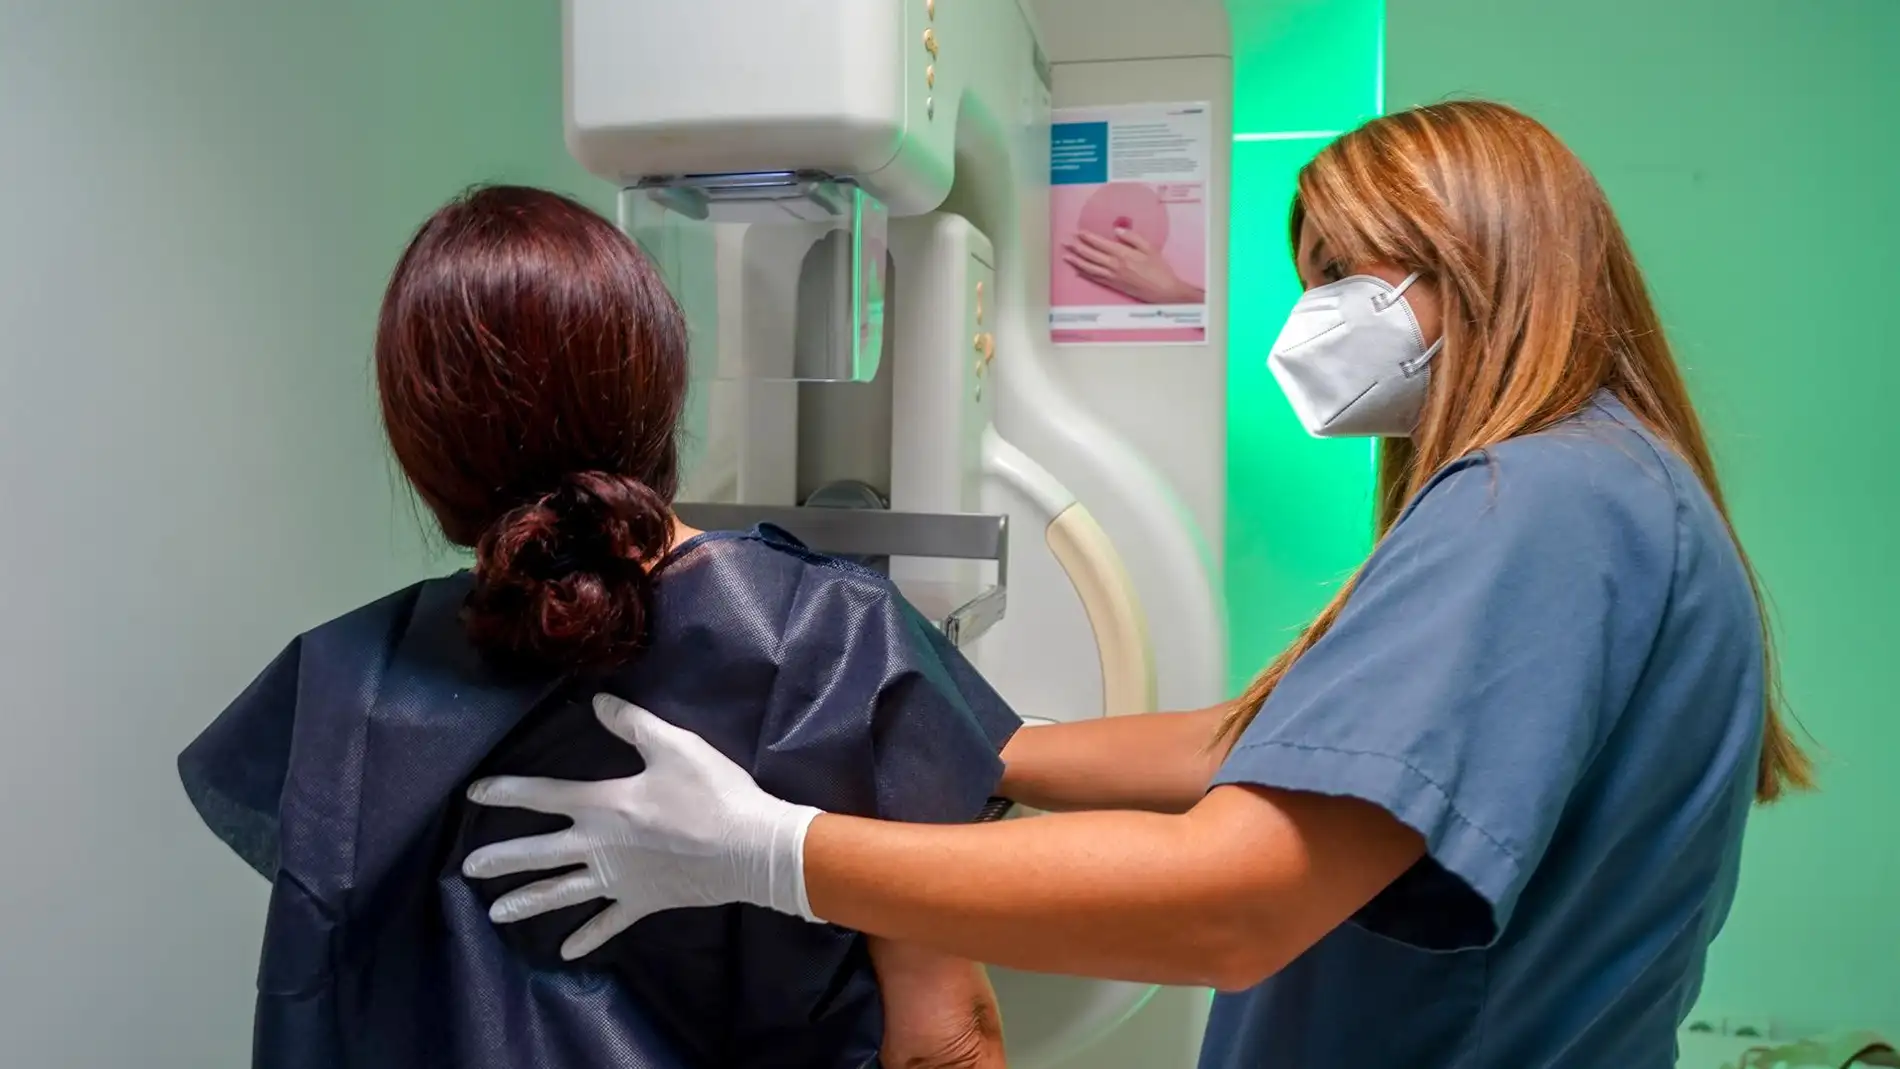 Más de 6.000 extremeñas se realizarán mamografías en abril dentro del Programa de Detección Precoz del Cáncer de Mama